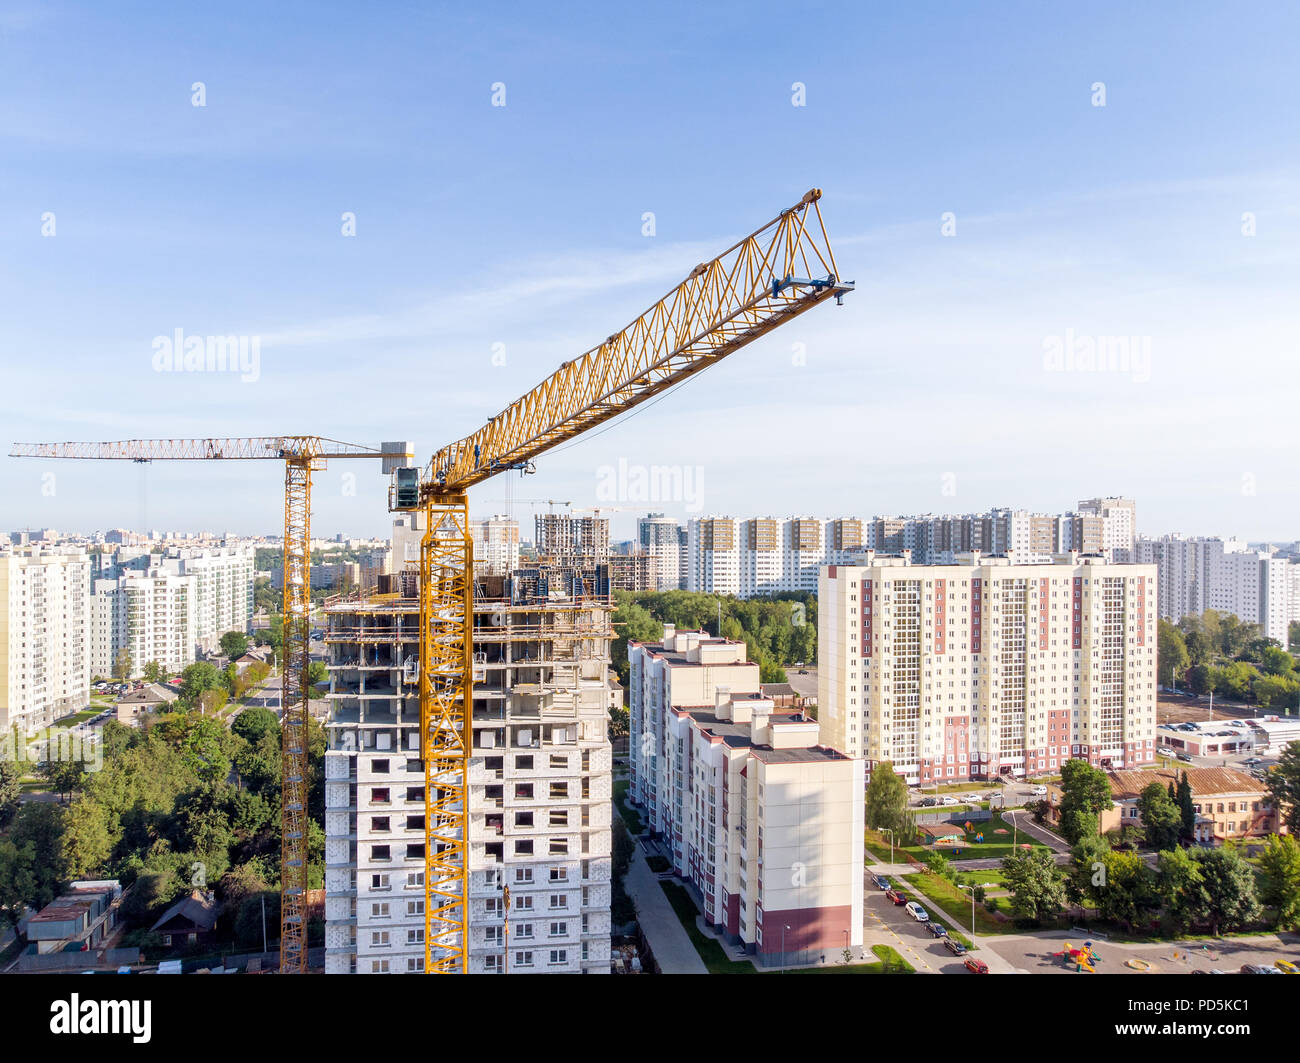 Alta amarillo grúa torre cerca multistorey apartamento en construcción. Fotografía aérea Foto de stock